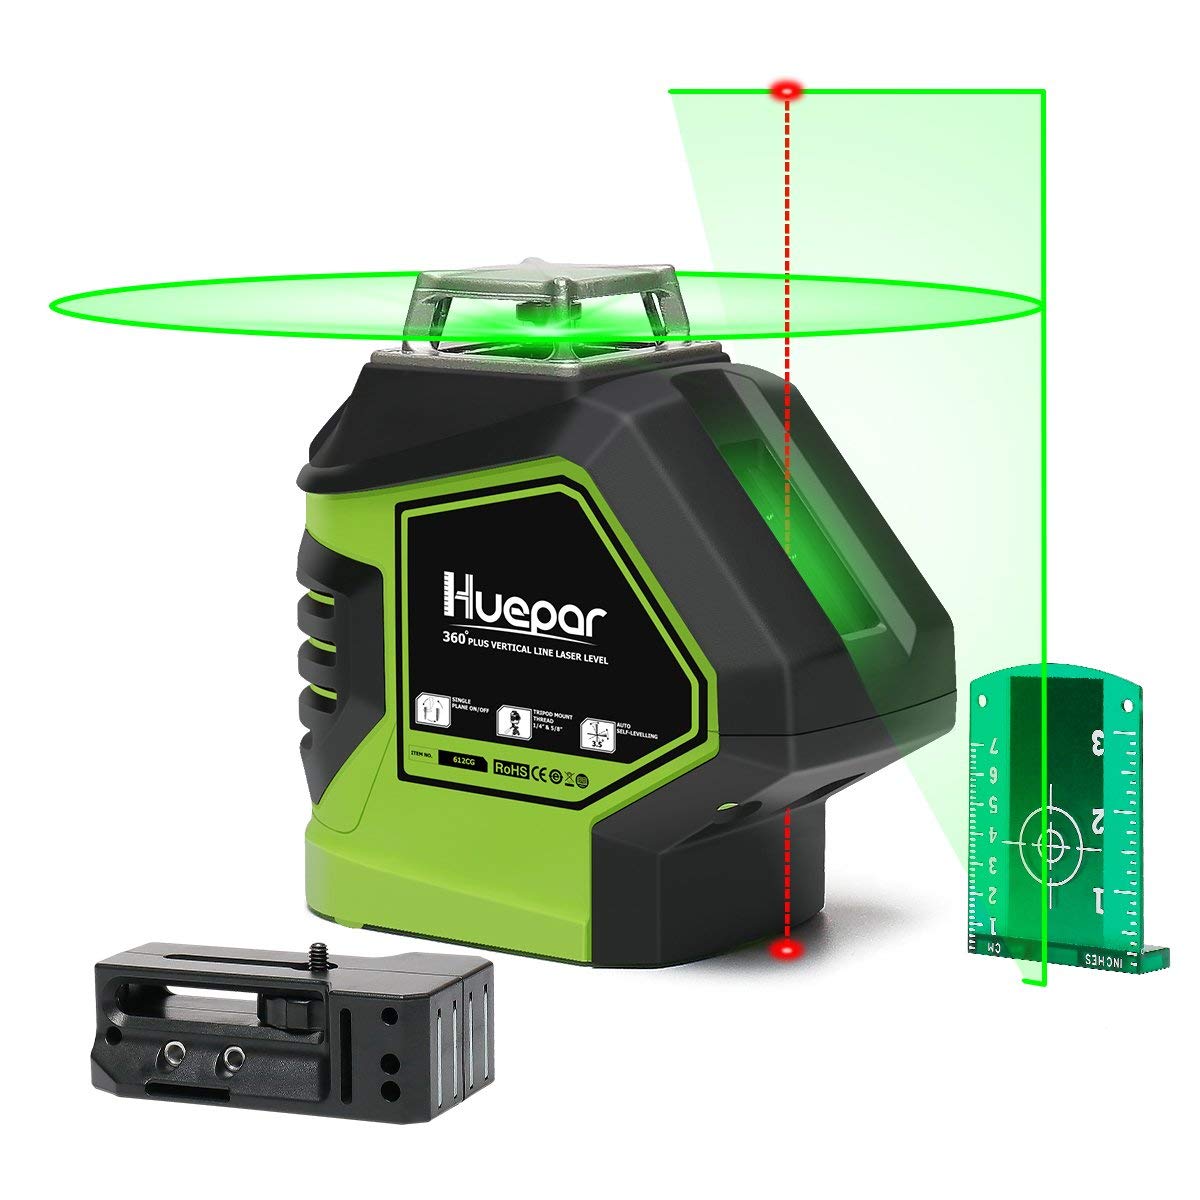  Huepar Nivel láser de línea cruzada, verde 360° horizontal y  dos líneas verticales, herramienta láser multilínea de alineación  autonivelante, batería de iones de litio con puerto de carga tipo C y